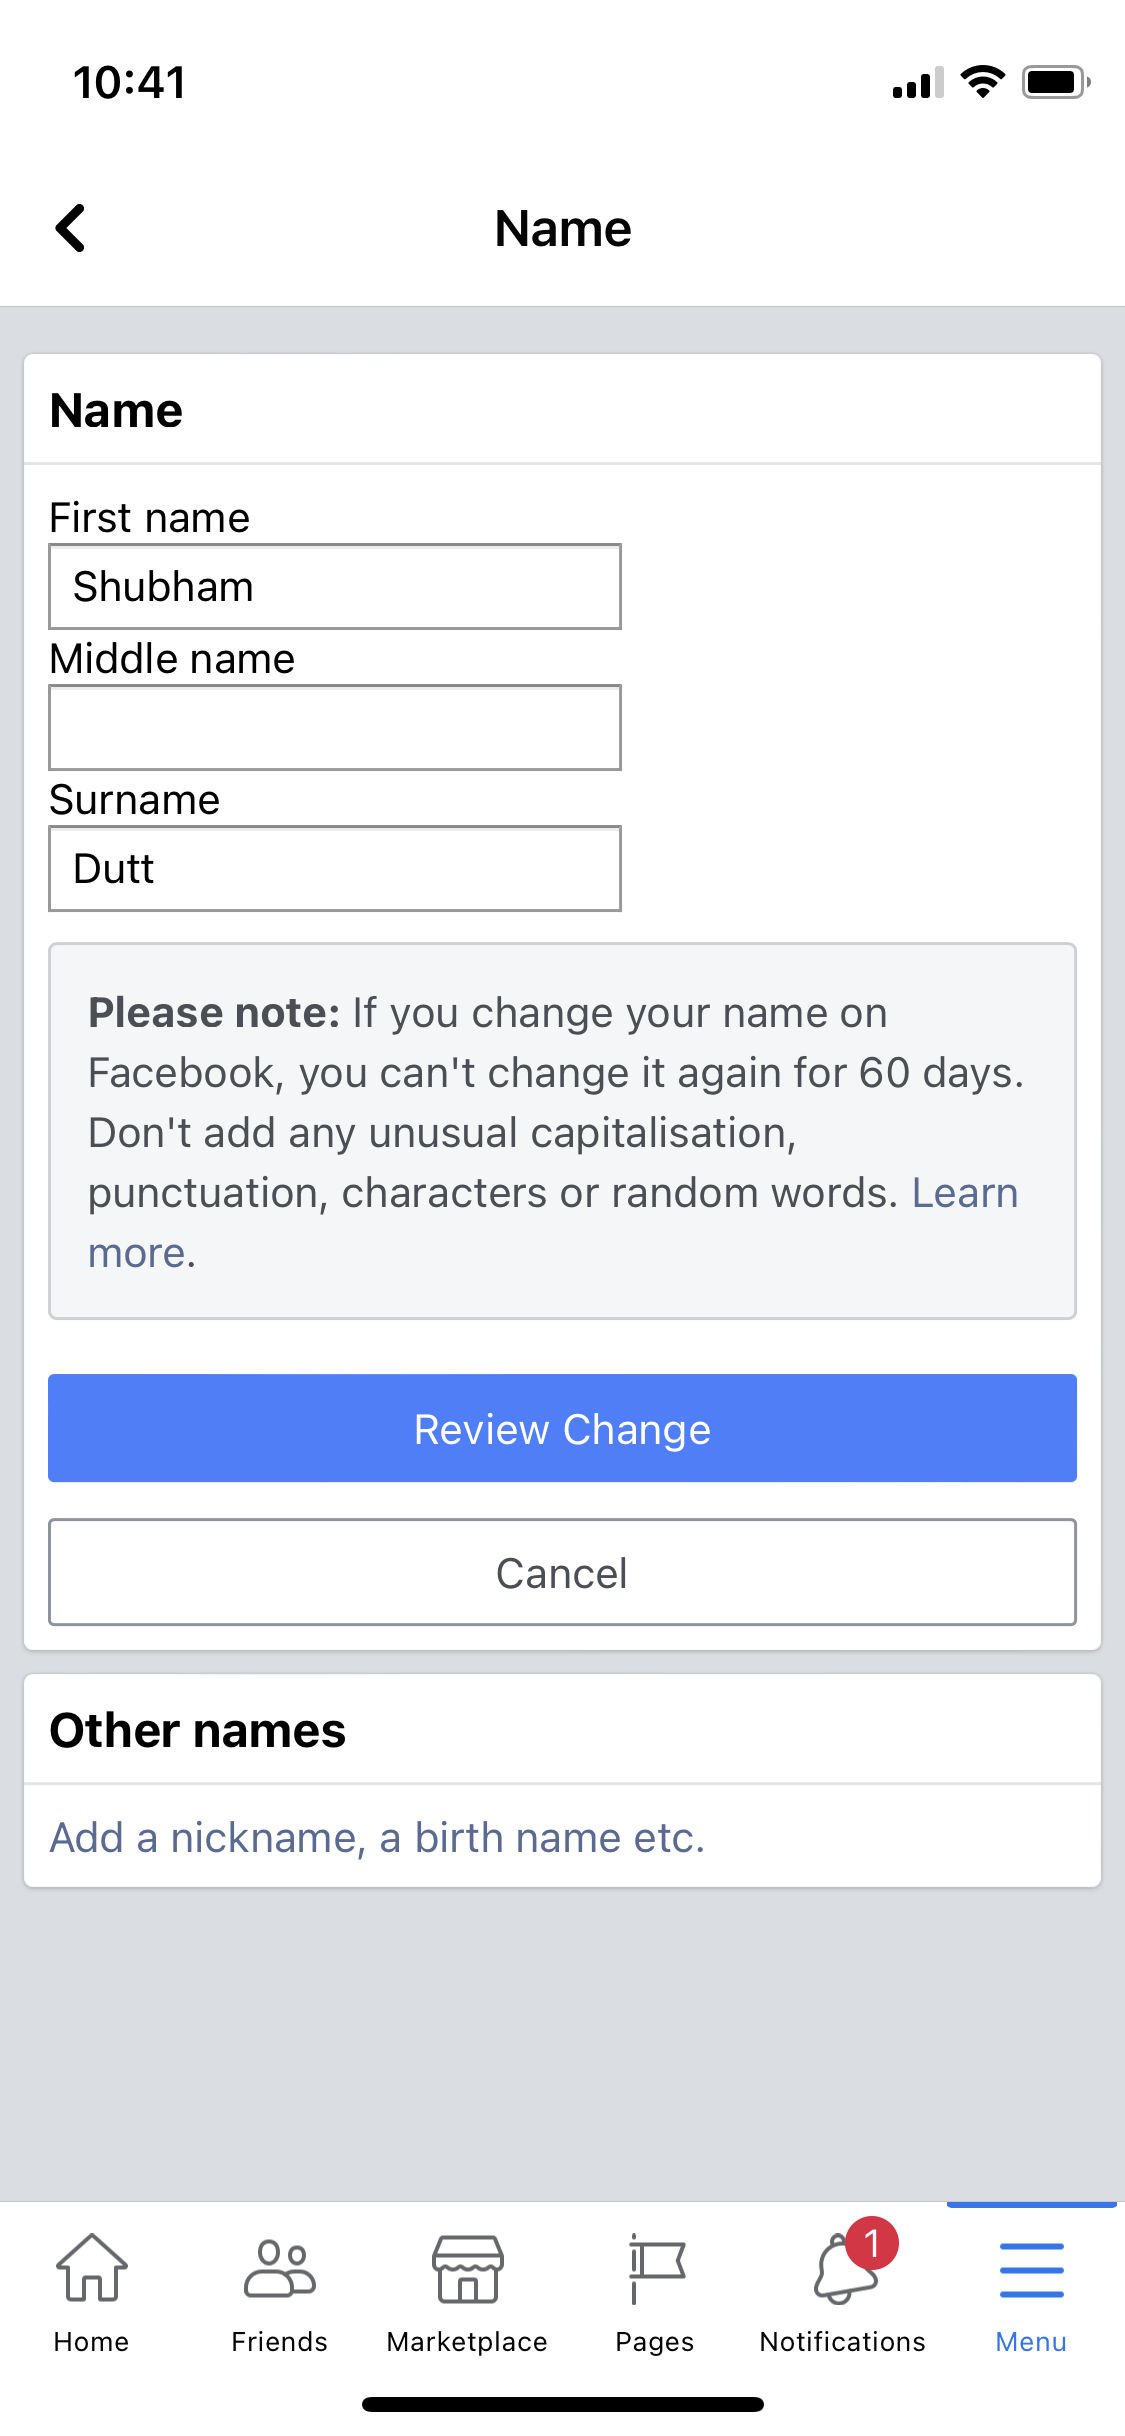 facebook stylish name,facebook stylish name change,faceboo…